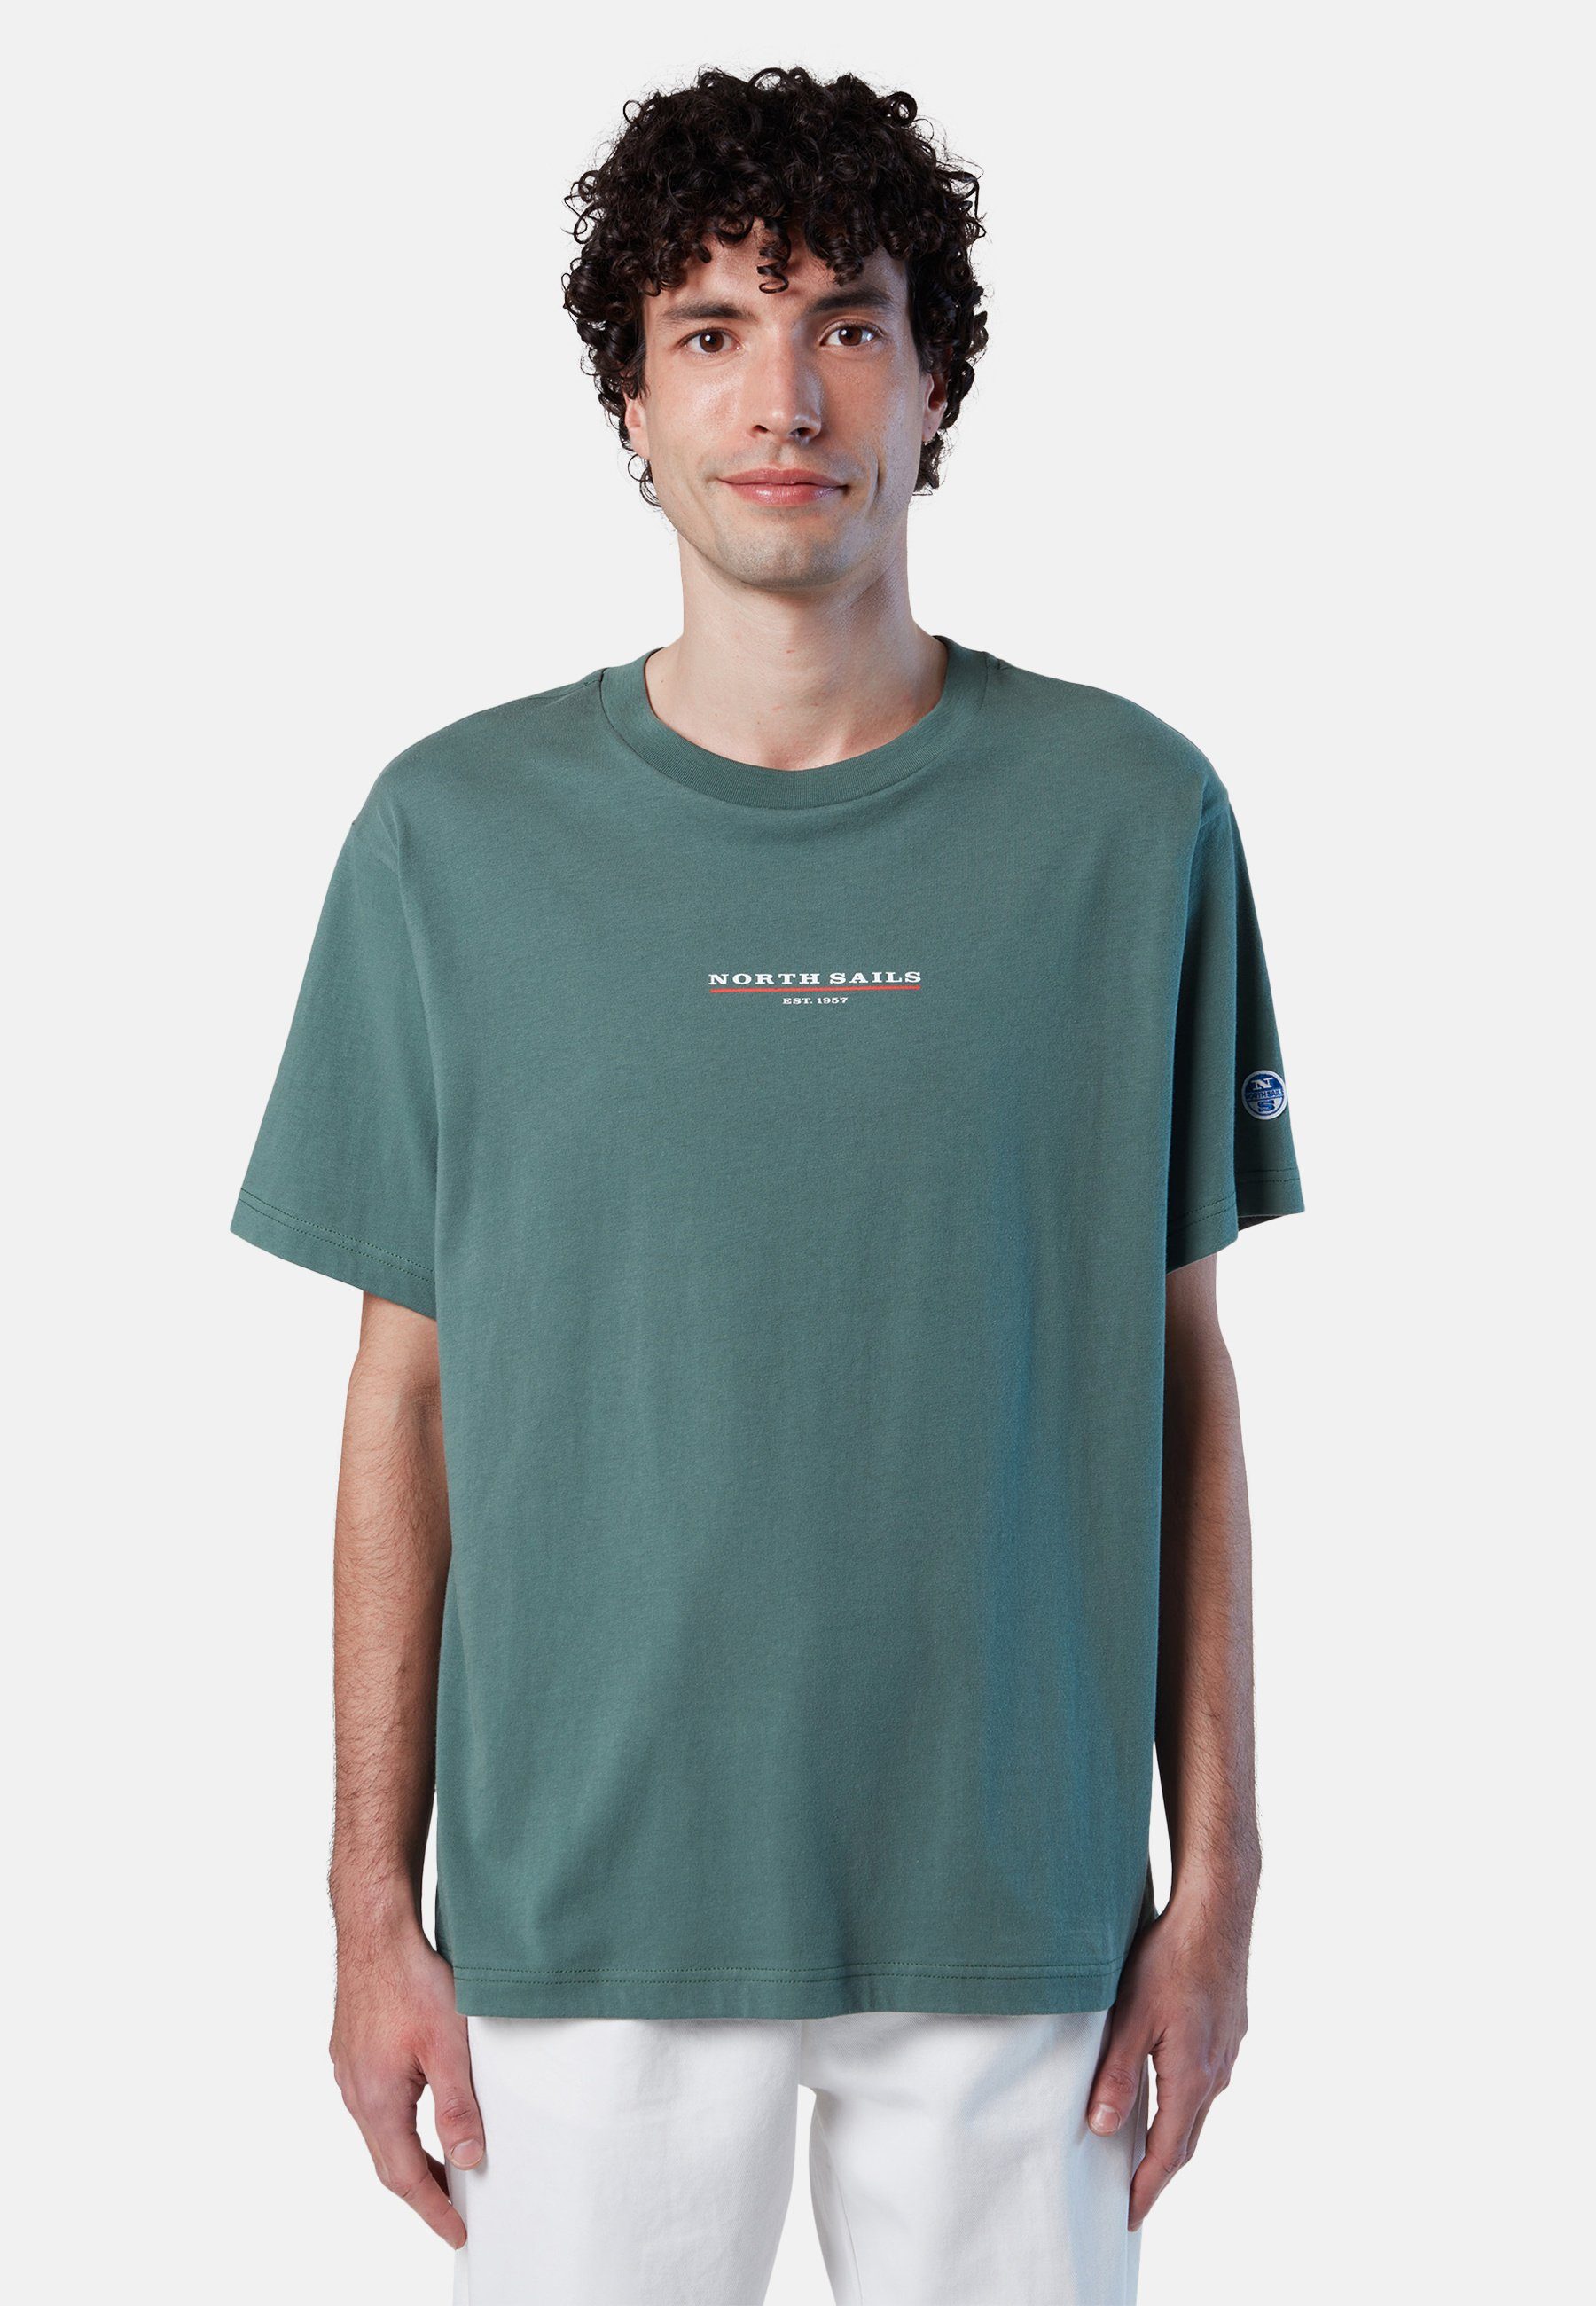 T-Shirt Sails Brustaufdruck T-Shirt green North mit